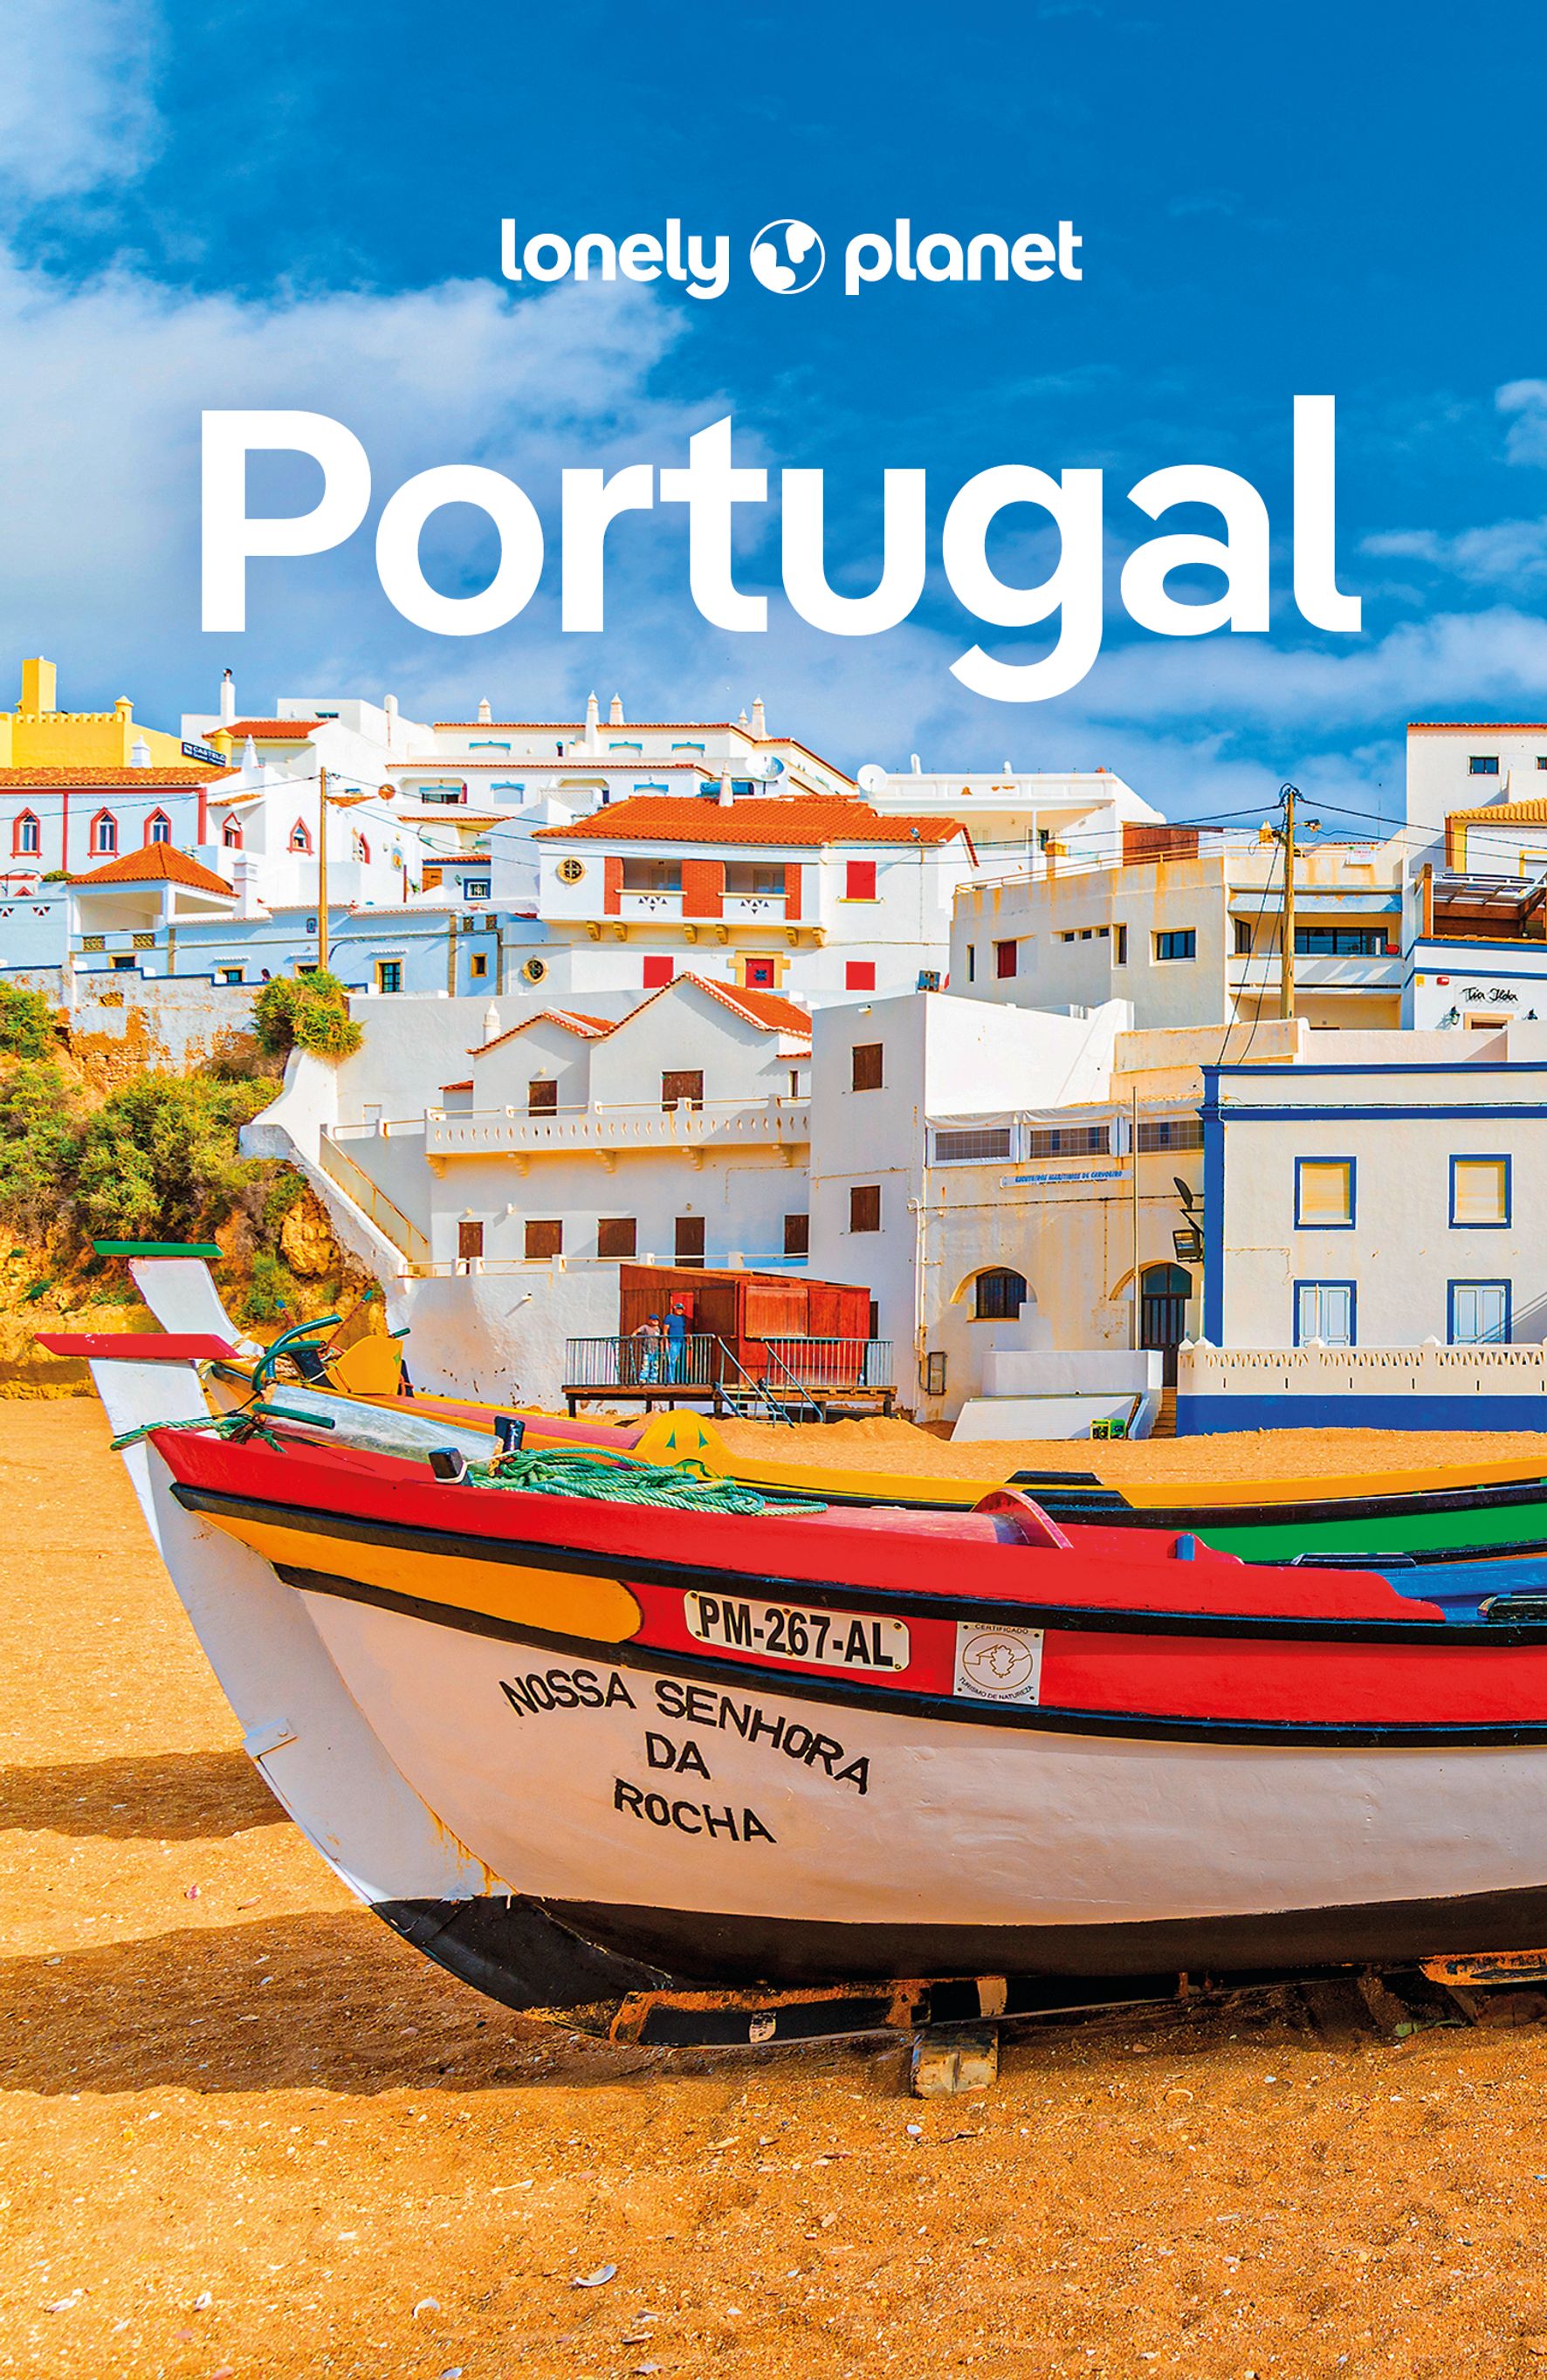 MAIRDUMONT Portugal (eBook)